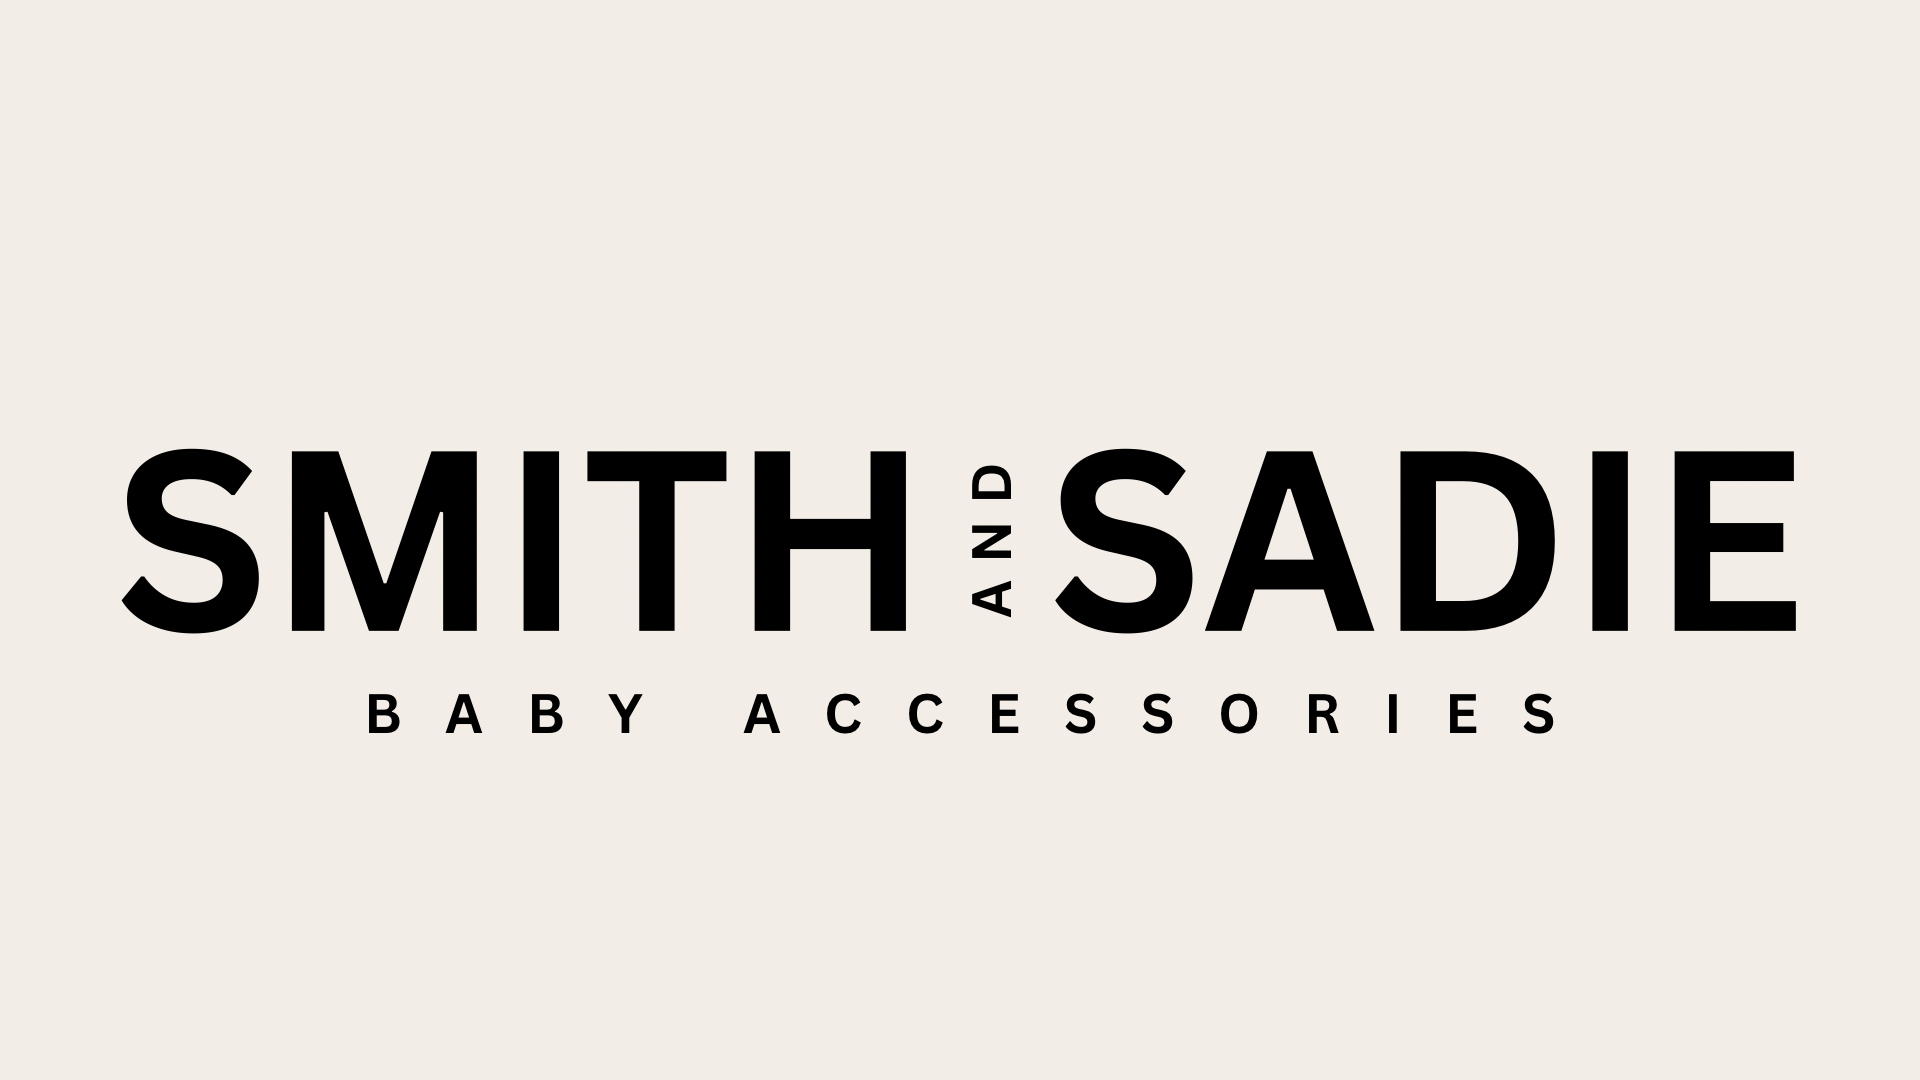 Smith & Sadie